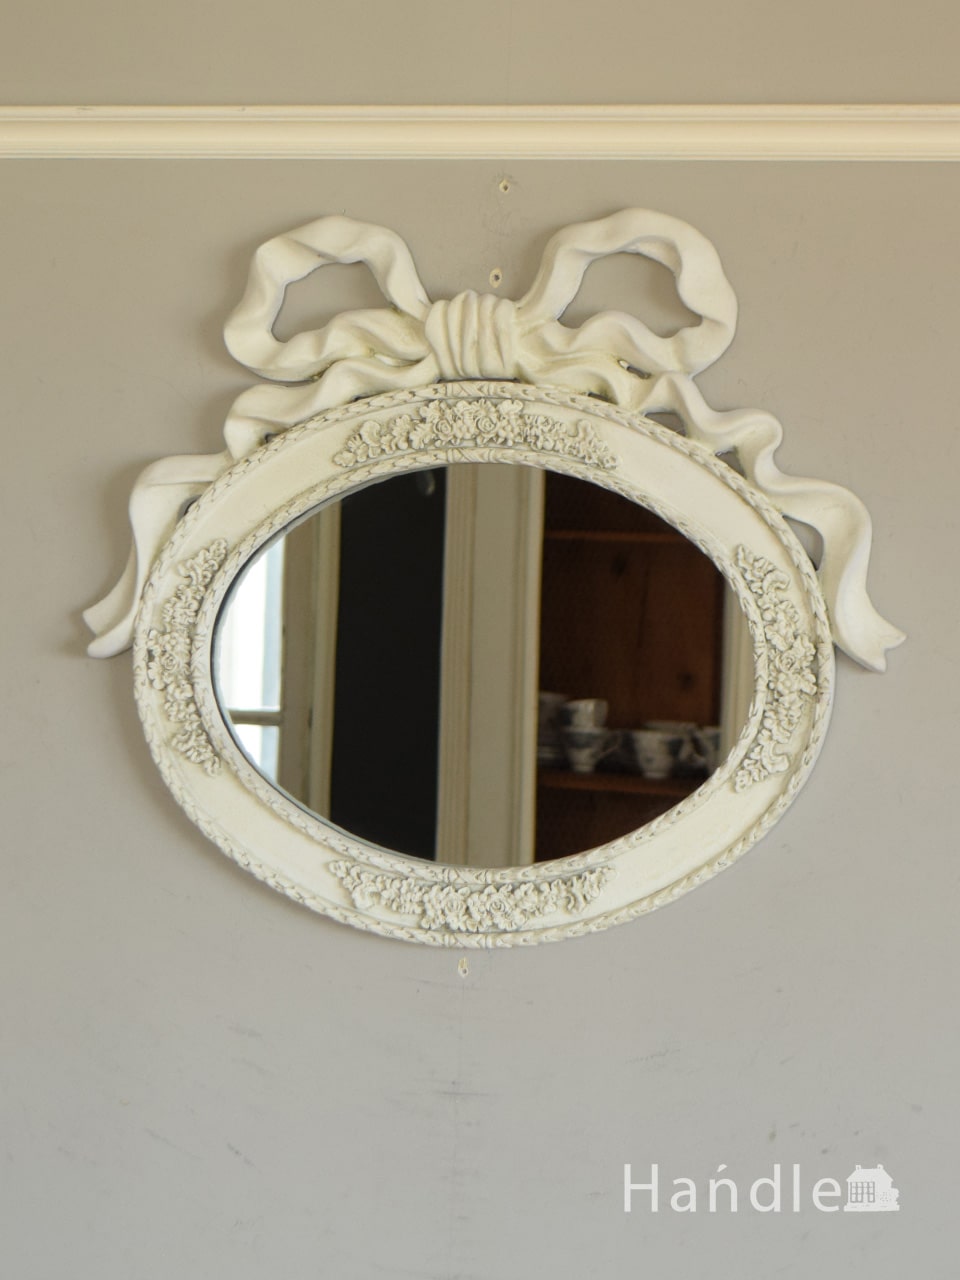 アンティーク調のおしゃれな鏡、大きなリボン付きのウォールミラー  (n21-060)